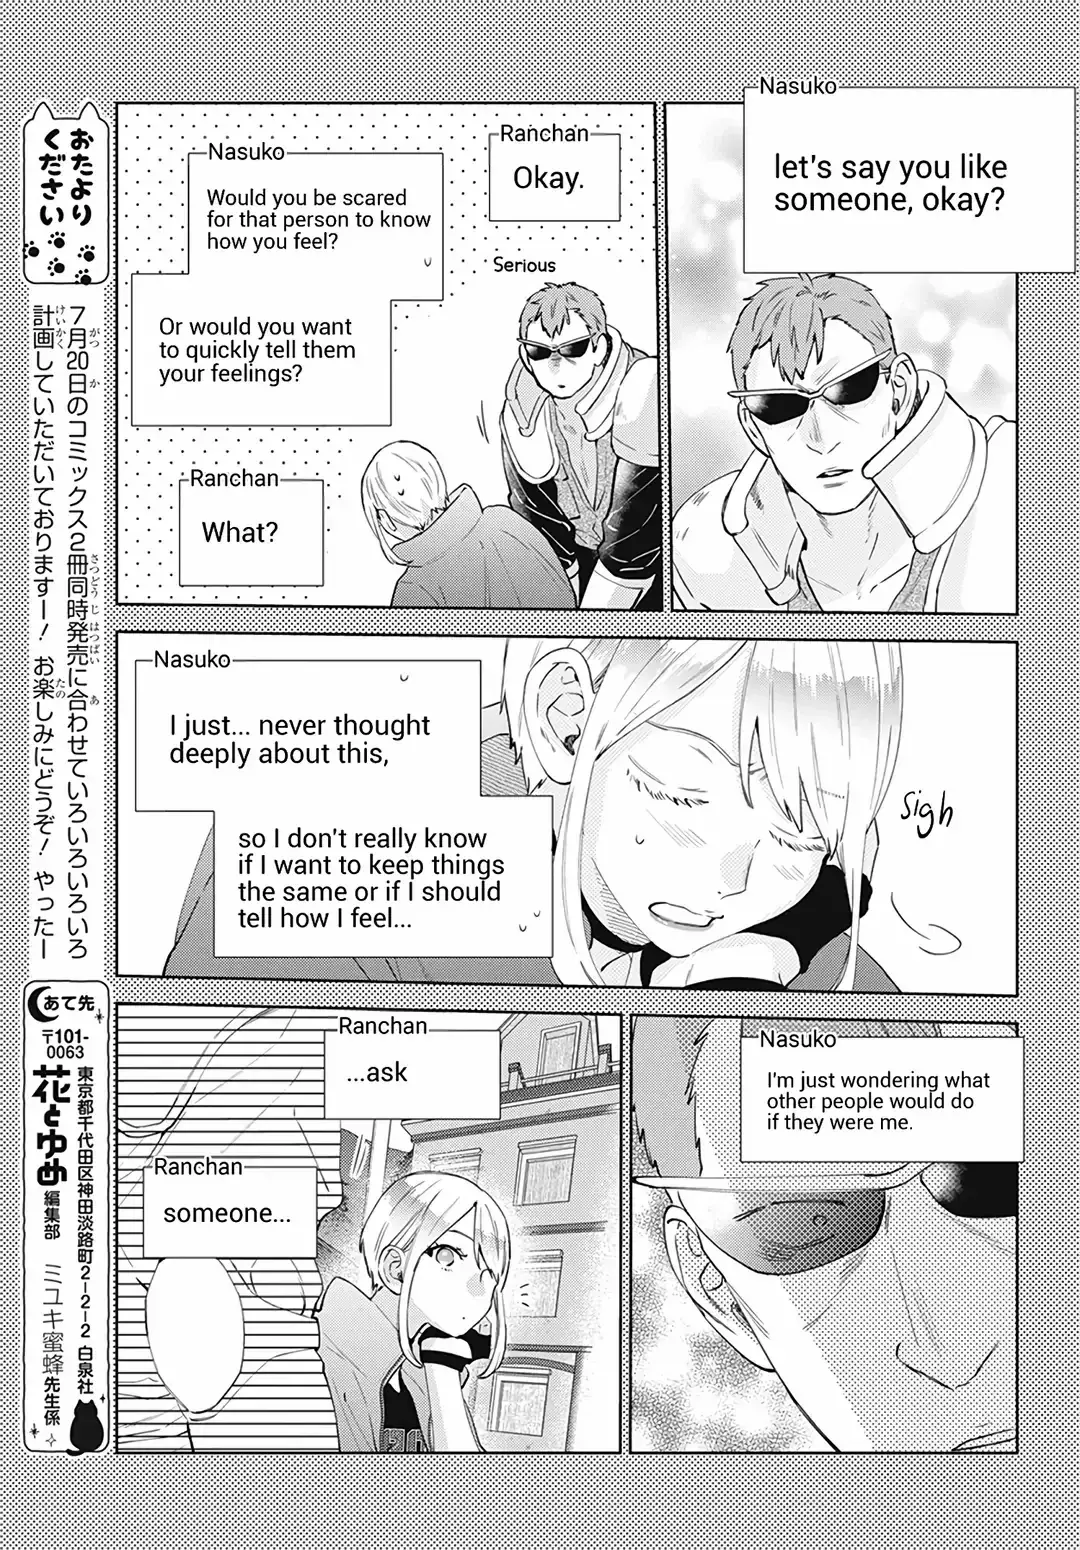 Haru No Arashi To Monster - 16 page 16-2ba1388c